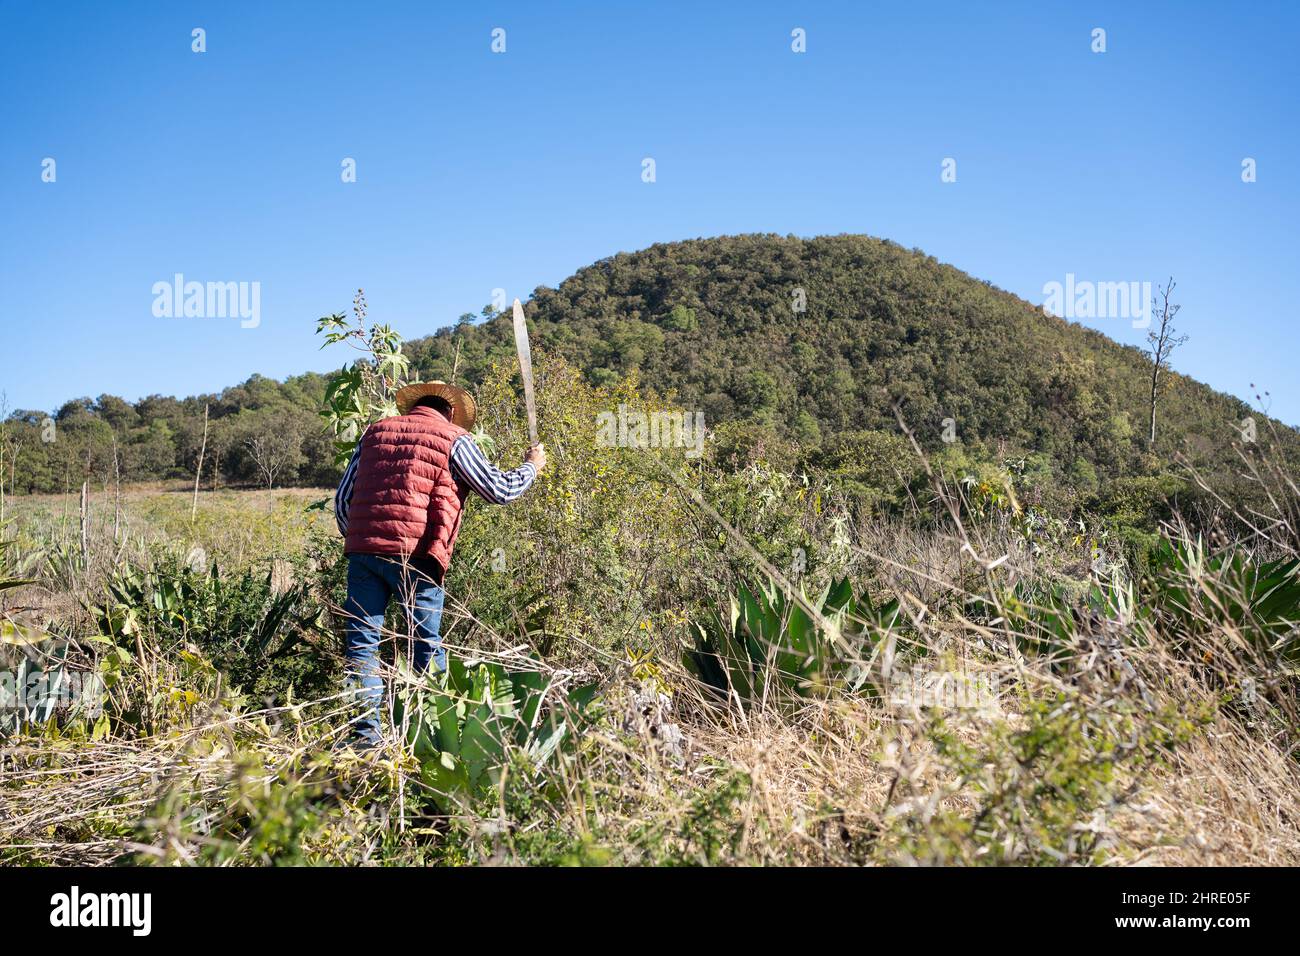 Foto de un trabajador que despeje el área donde la agave está creciendo para tequila y lechuguilla Foto de stock